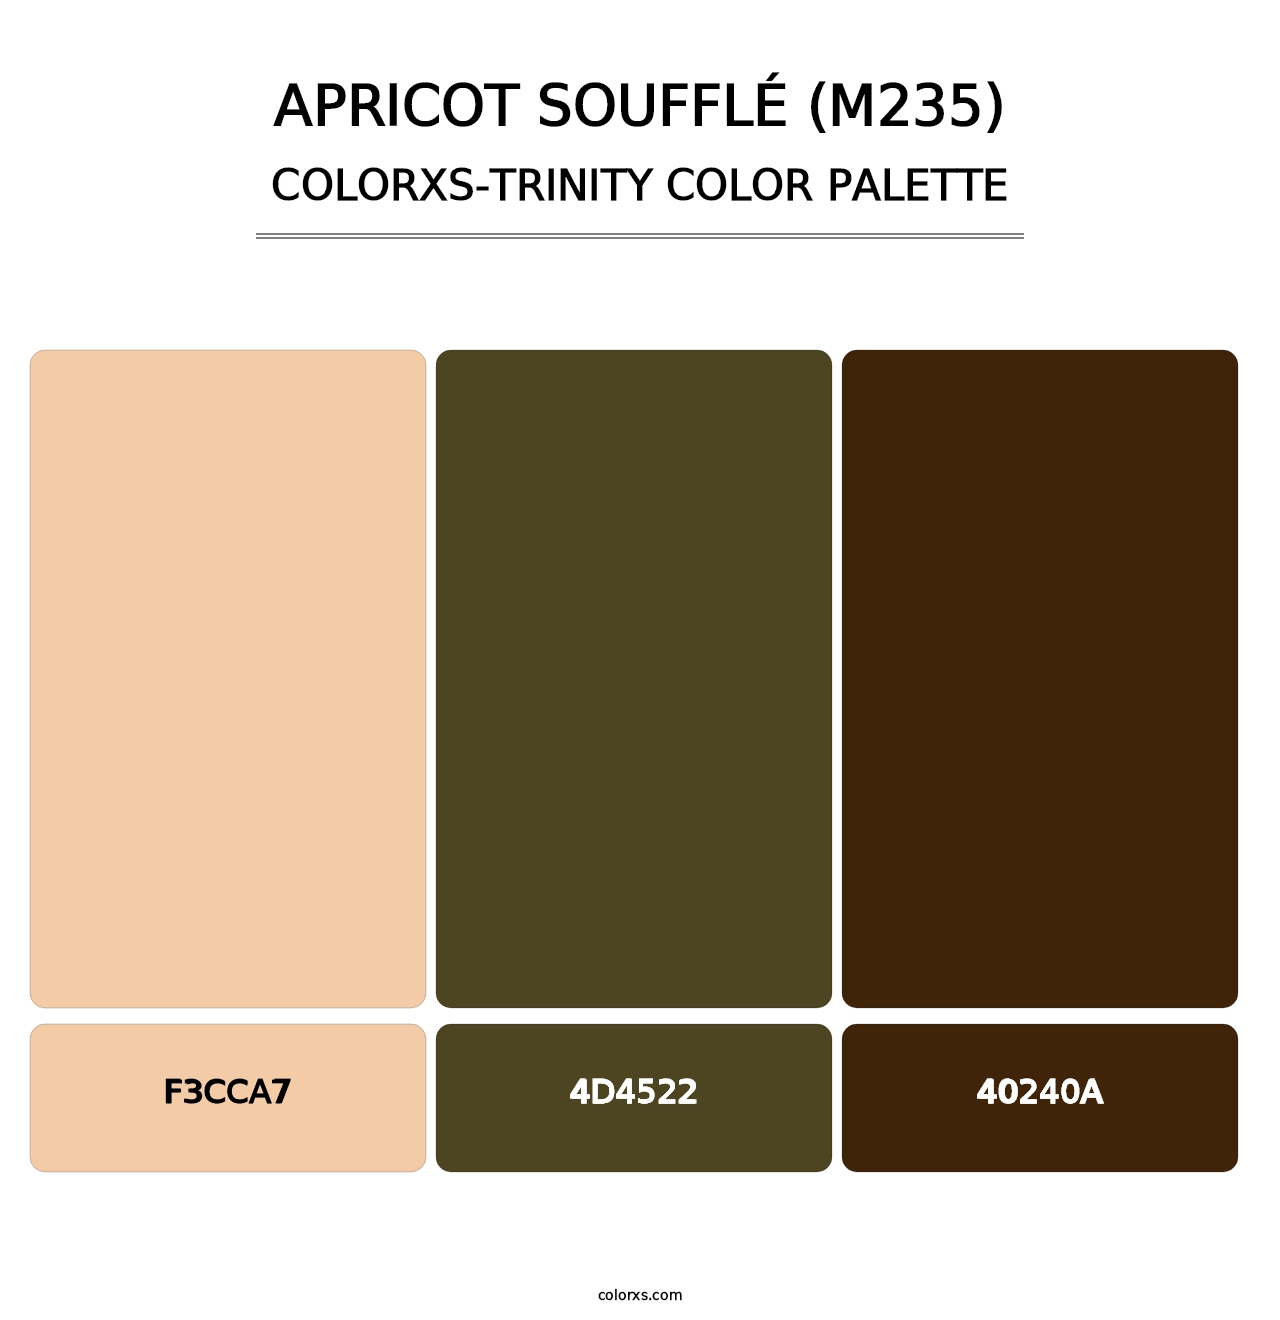 Apricot Soufflé (M235) - Colorxs Trinity Palette